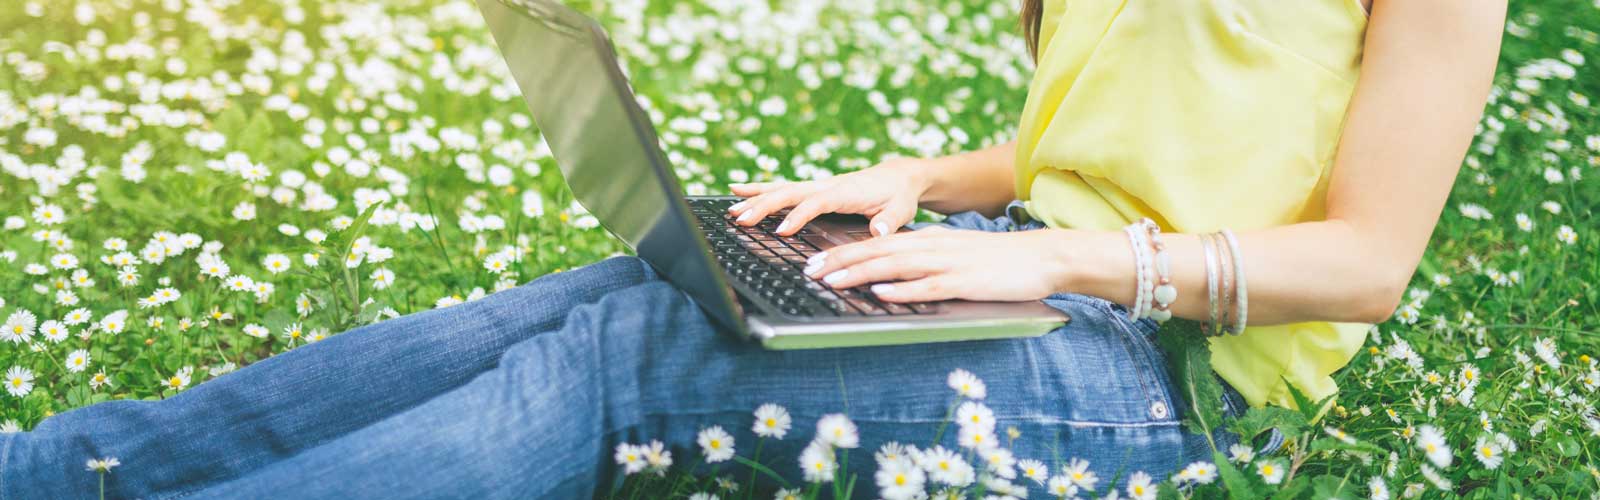 girl on laptop in summer field